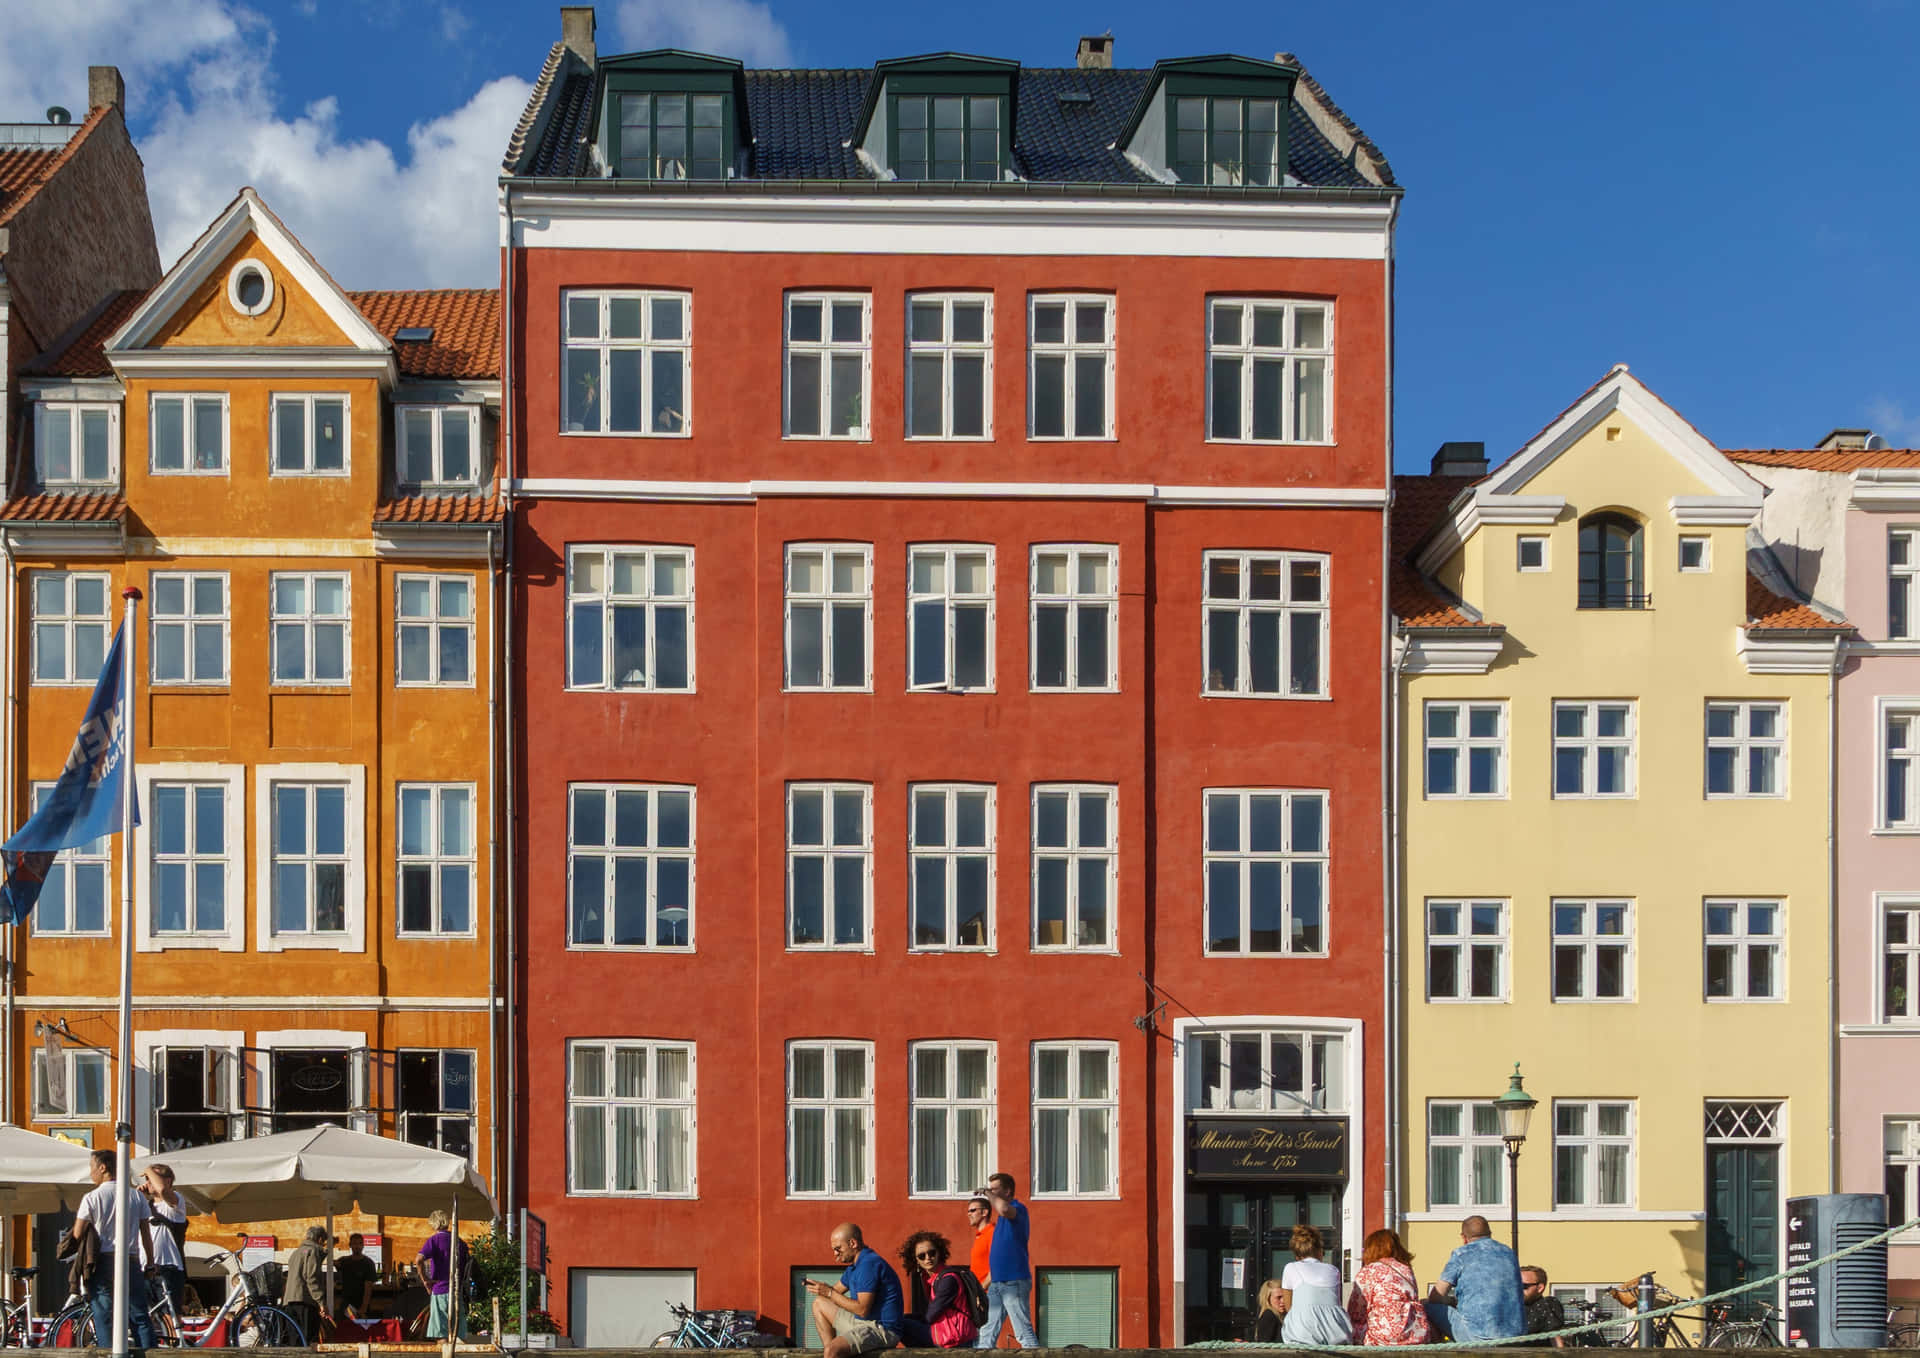 Nyhavn 53 Madame Toftes Hus - Pynt din skærm med dette farverige tapet designet for at give et moderne tvist til en klassisk københavnsk facade. Wallpaper